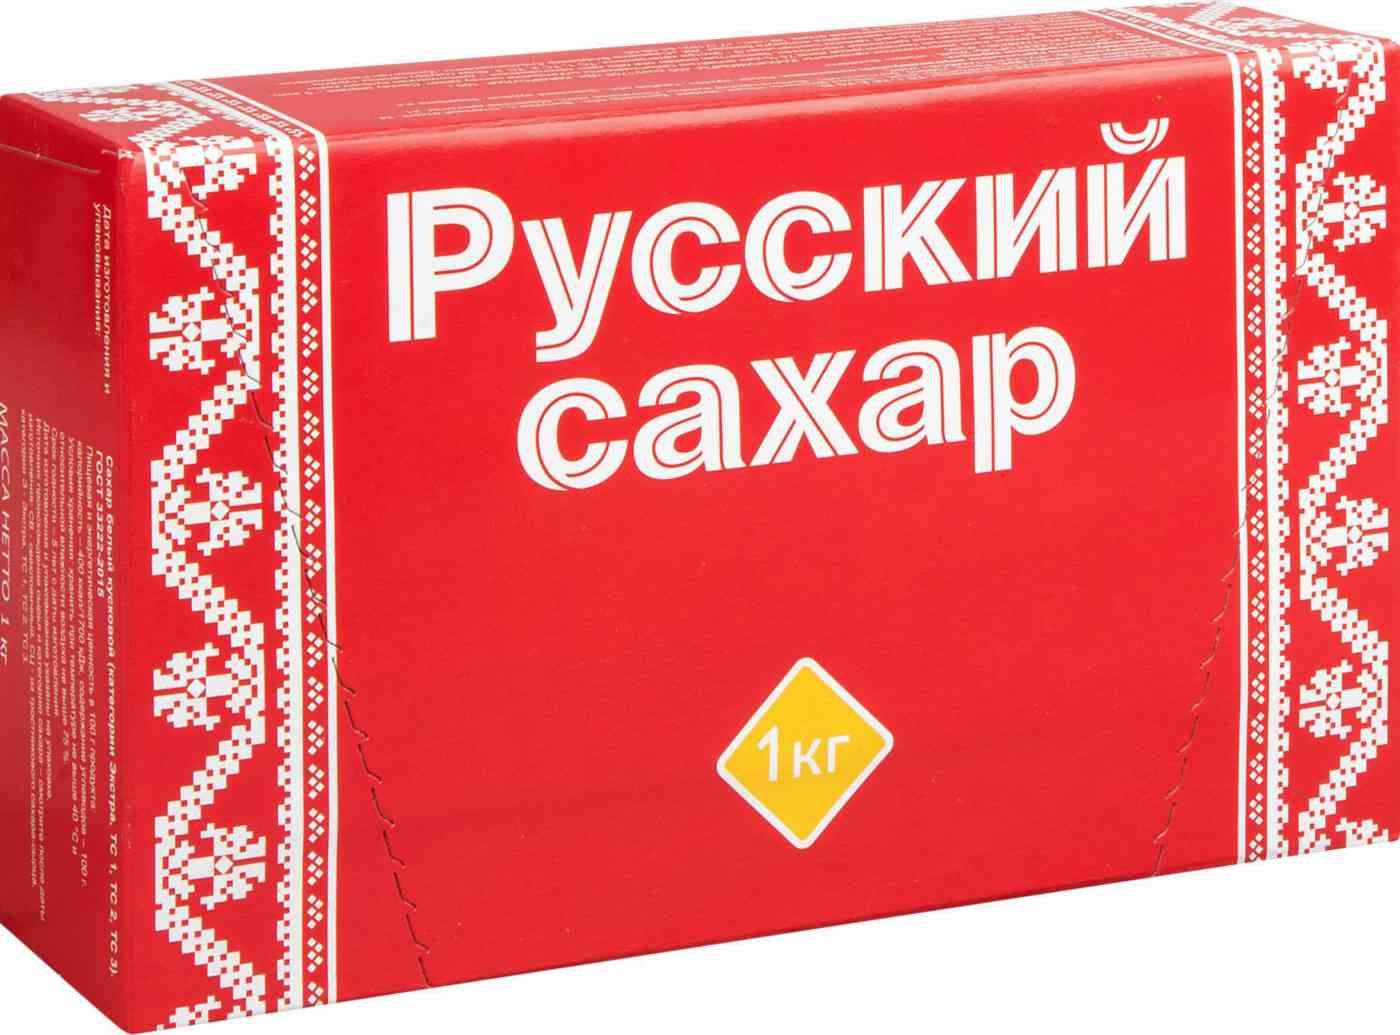 Сахар 1 кг. Сахар русский сахар рафинад 1кг. Сахар-рафинад русский 1 кг. Сахар русский кусковой 1кг. Сахар-рафинад быстрорастворимый, 1 кг.